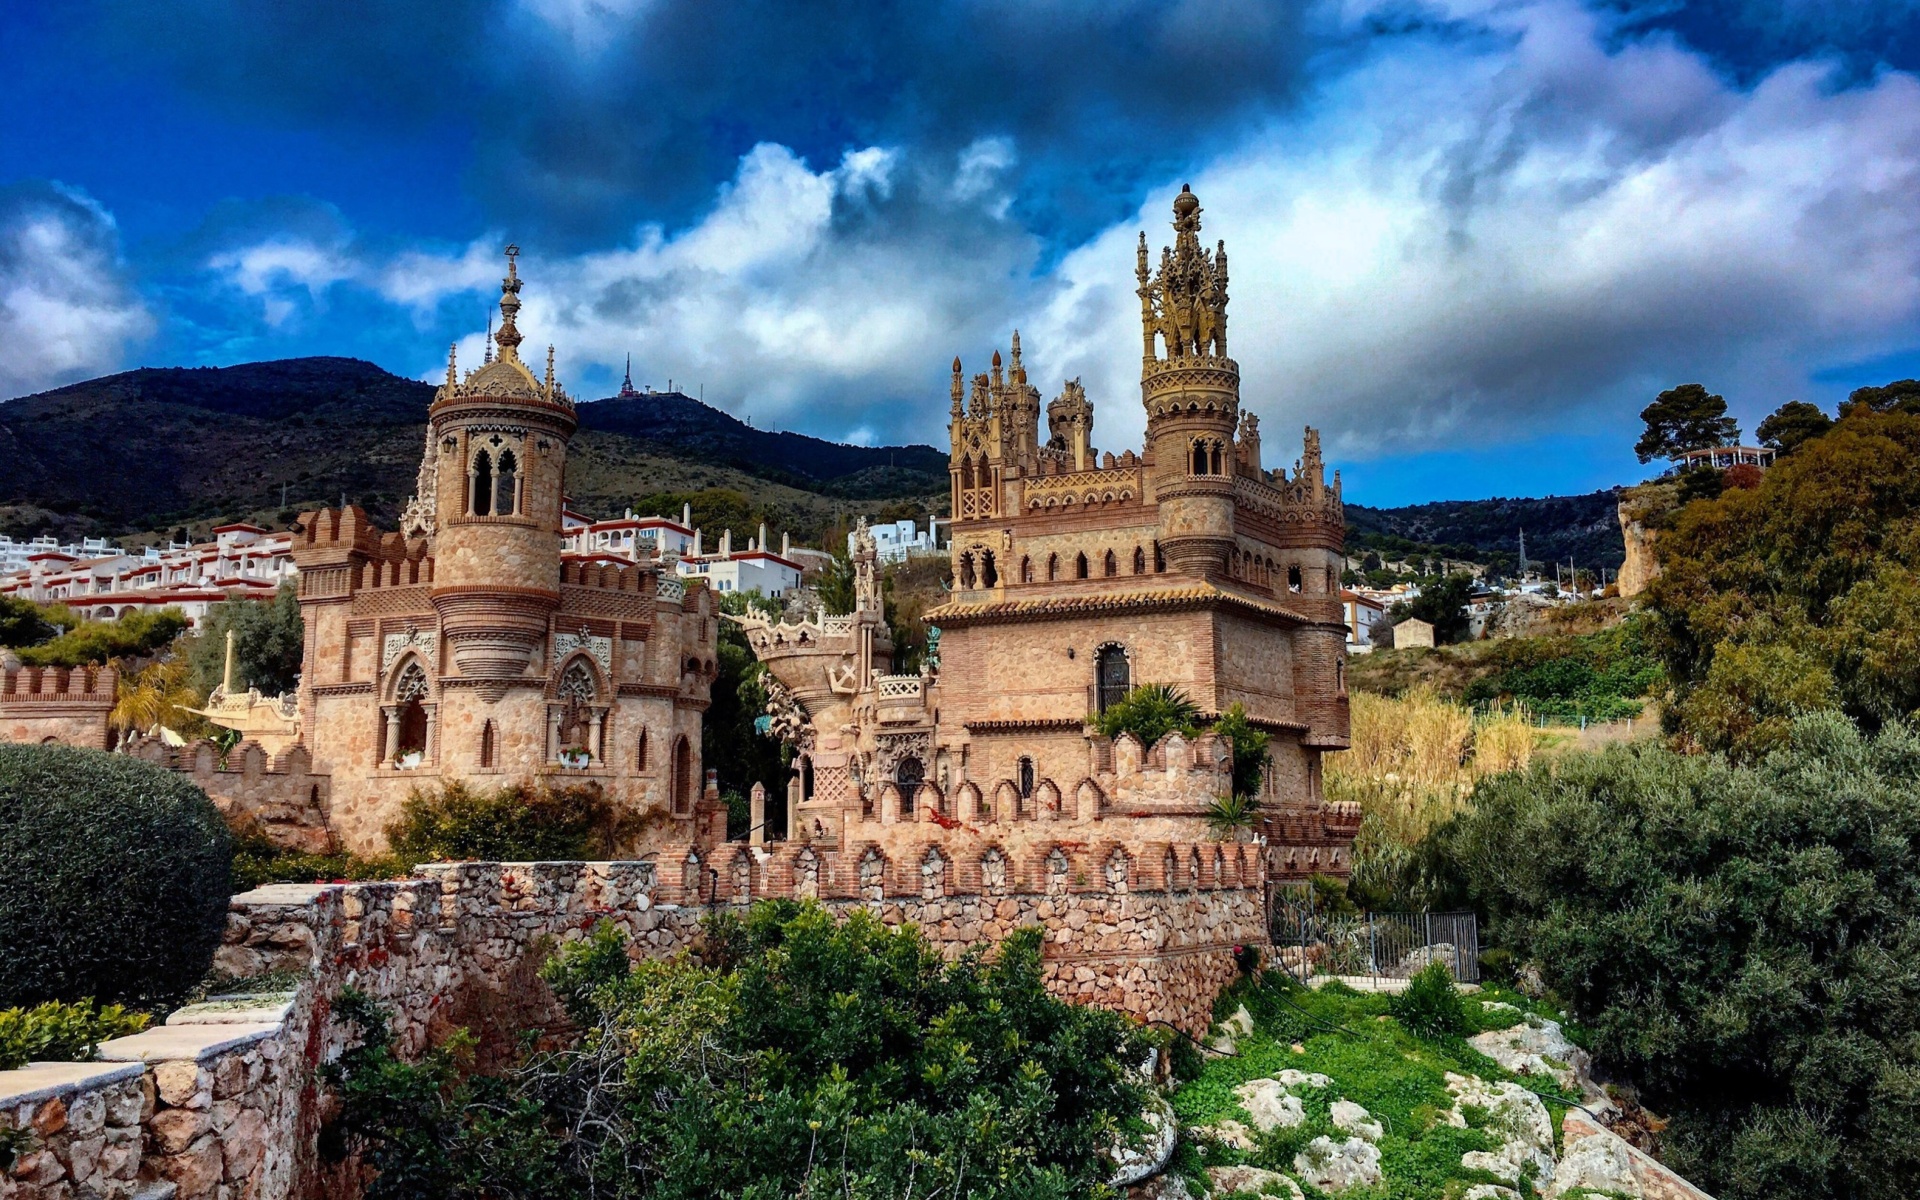 Castillo de Colomares in Spain Benalmadena screenshot #1 1920x1200